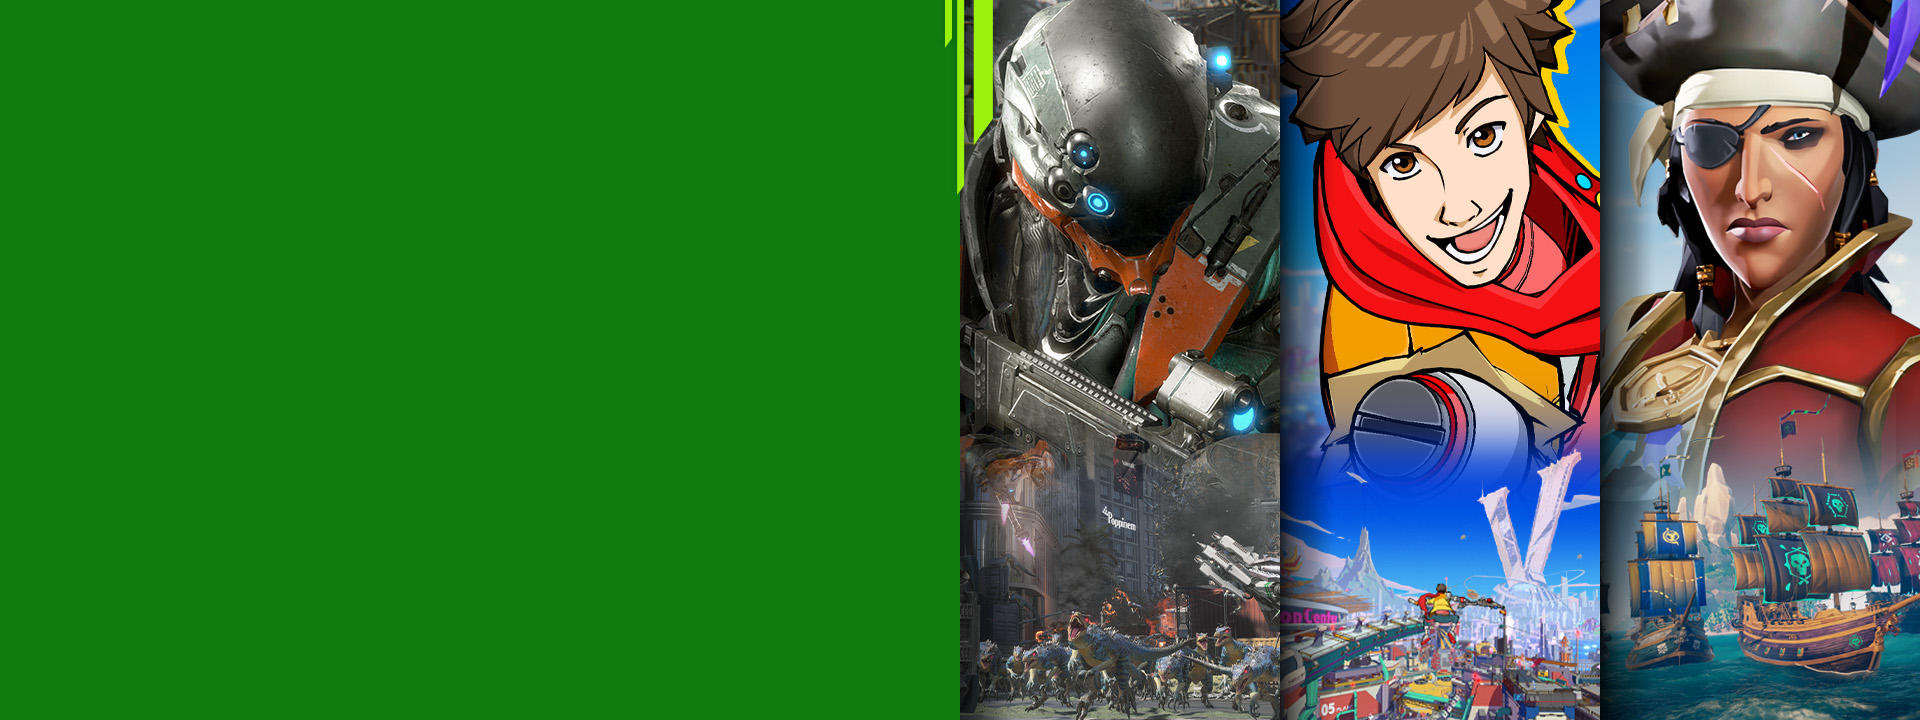 Čelní pohled na různé postavy z her pro Xbox – Exoprimal, Hi-Fi Rush a Sea of Thieves.